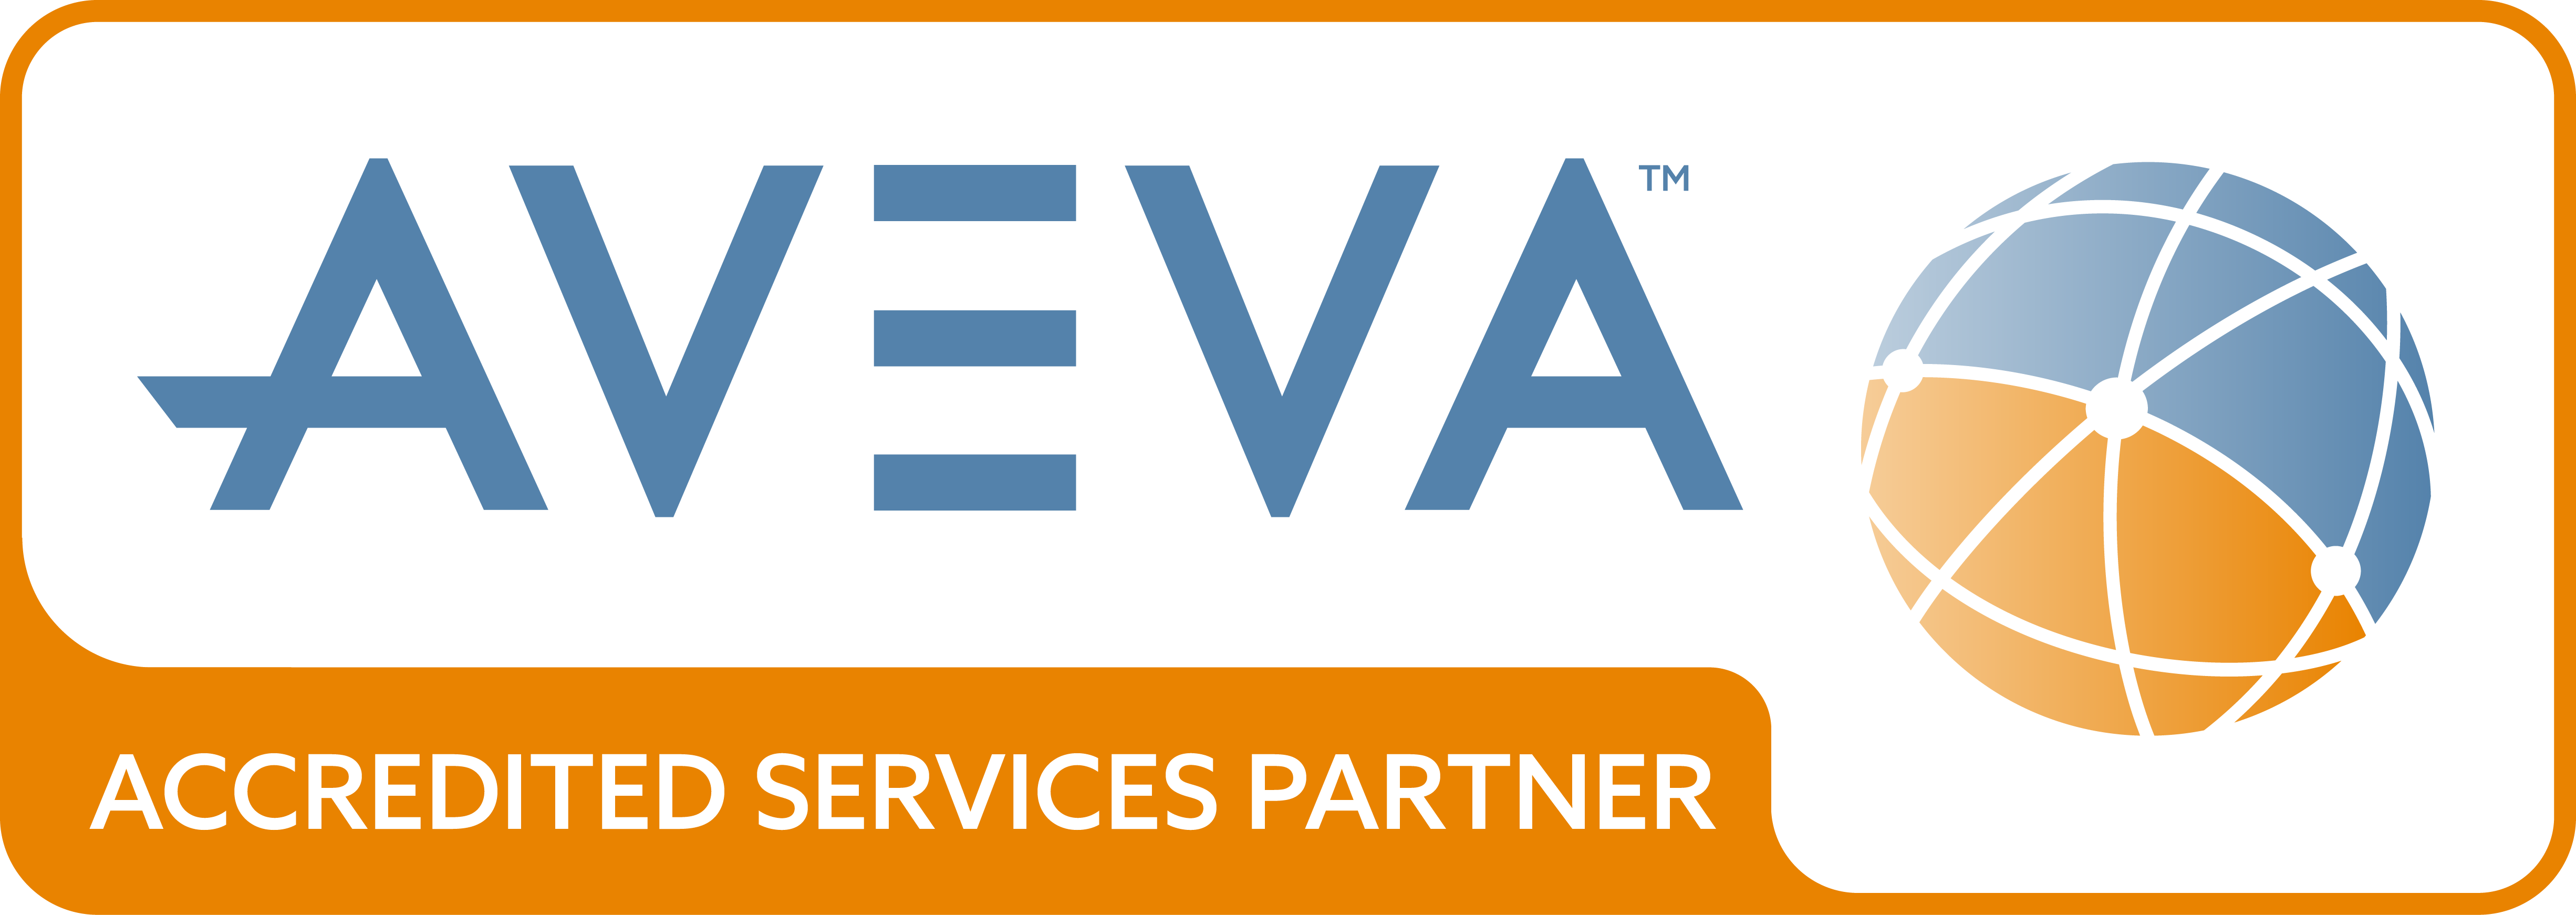 AVEVA-Global-Partner-Network-Logo-Accredited-Services-Partner